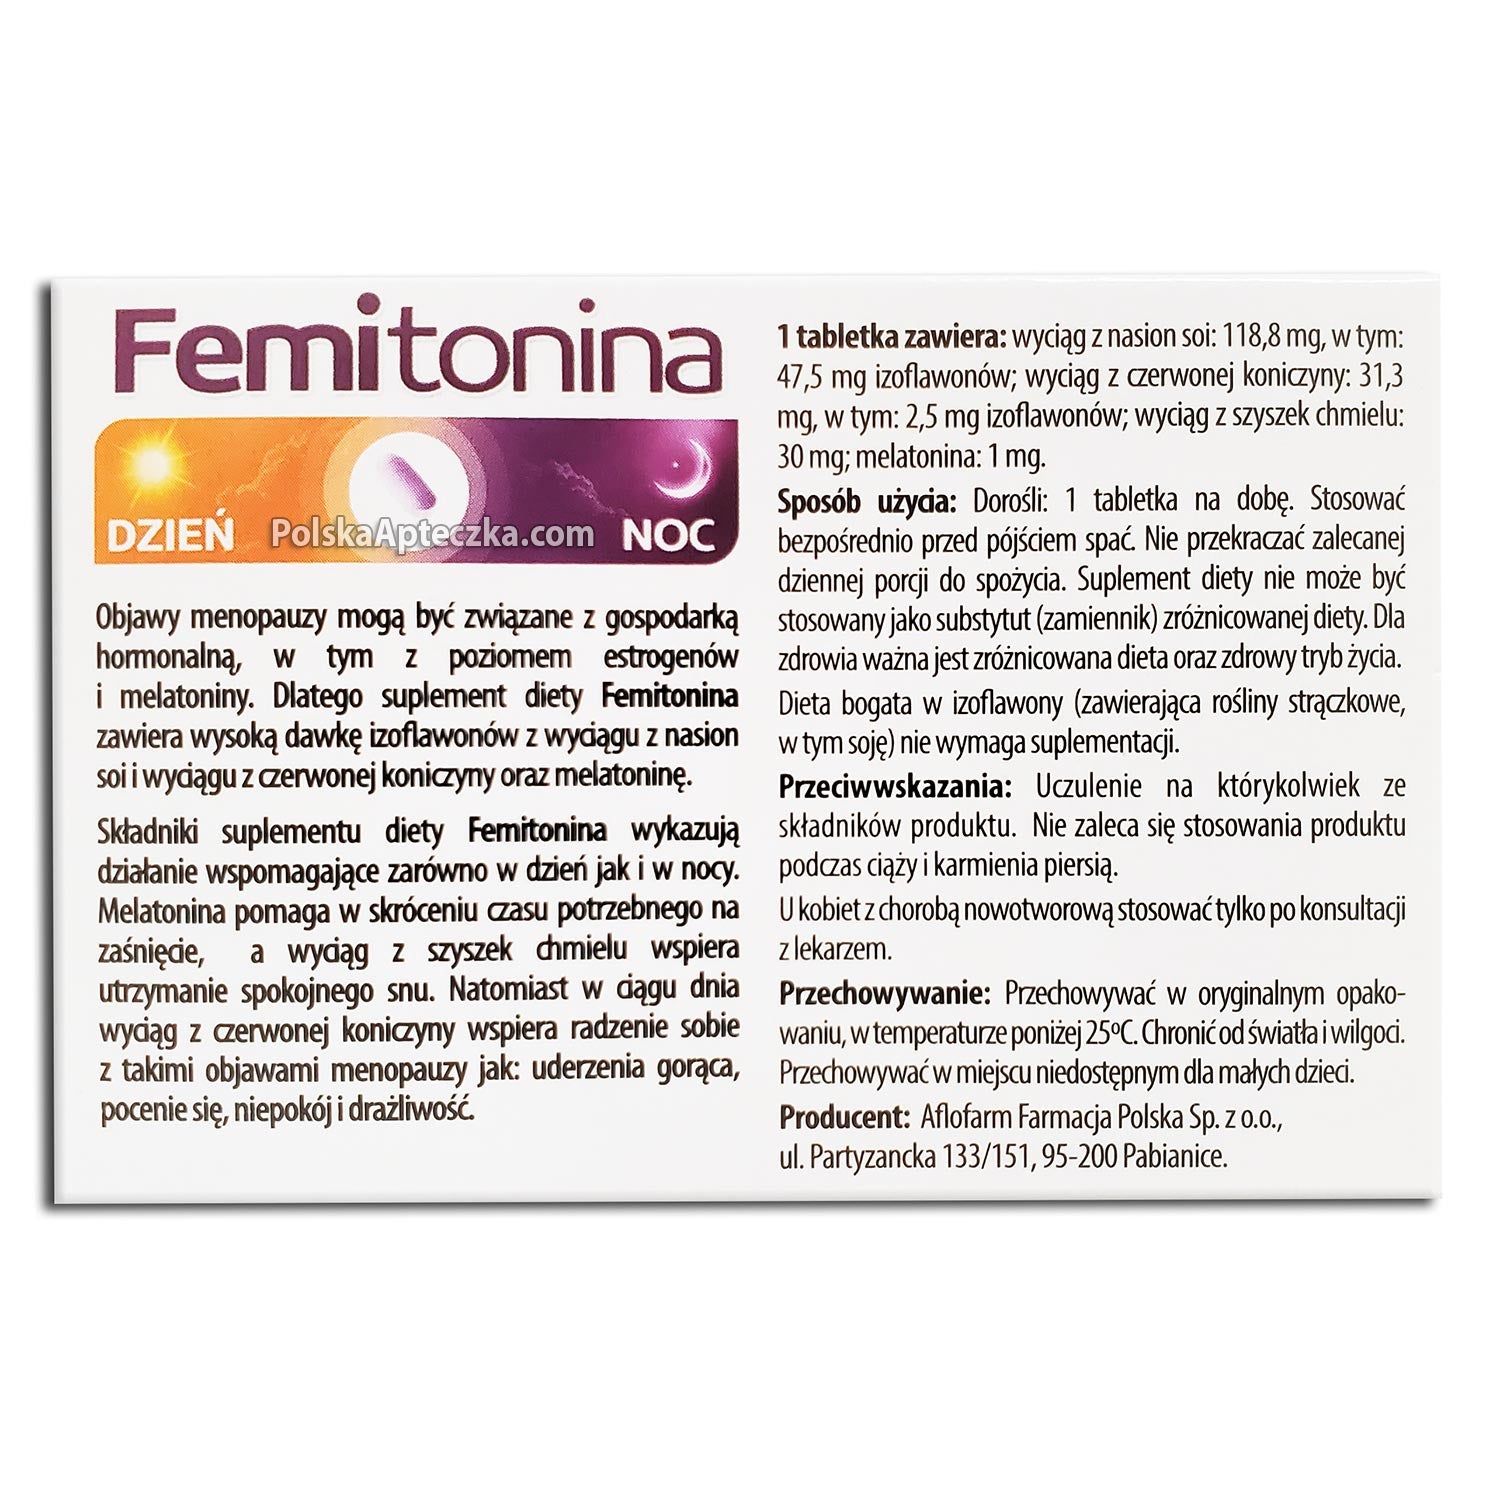 femitonina